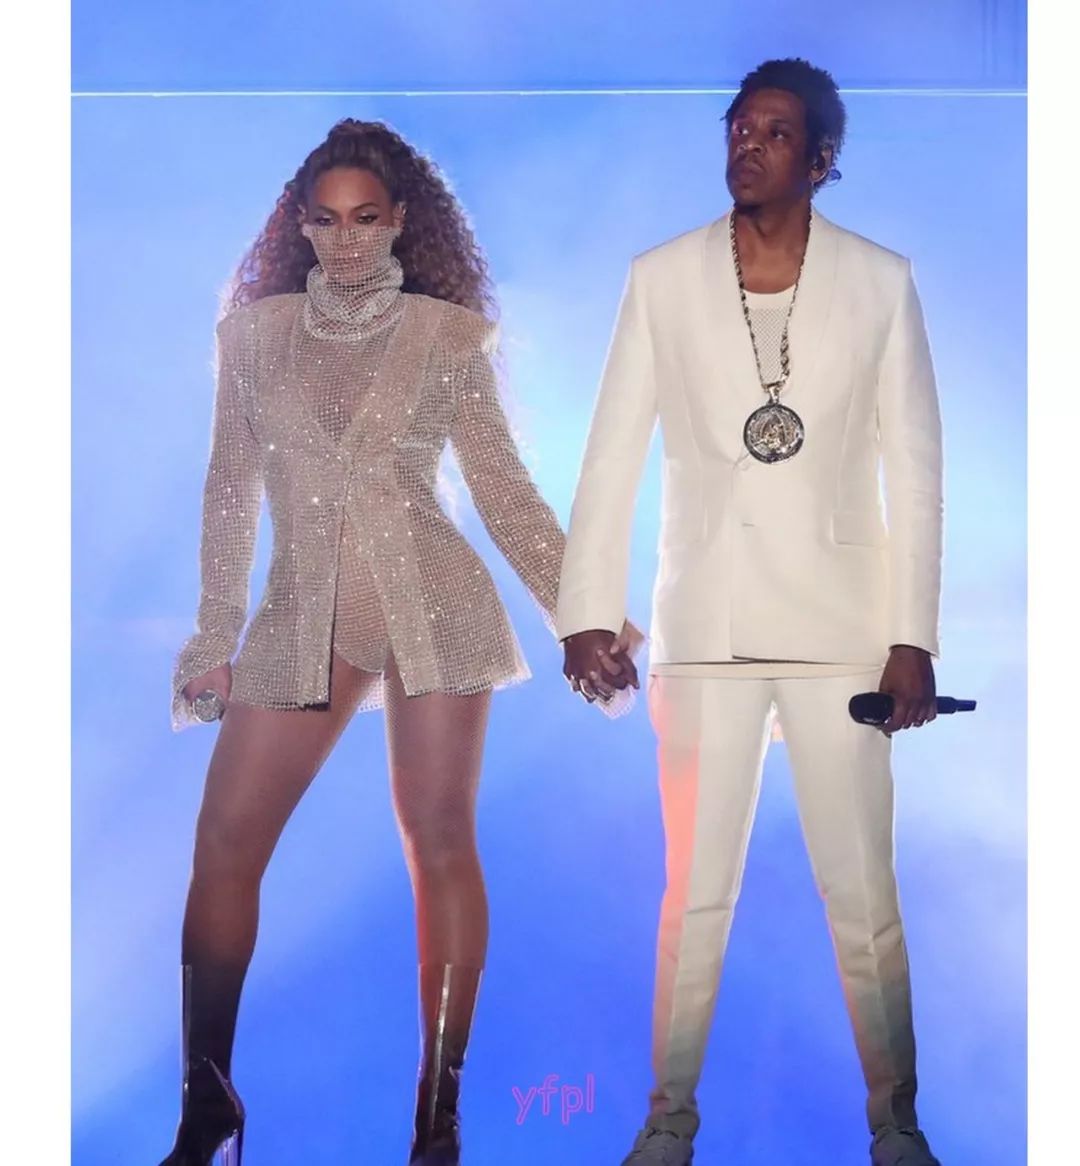 别讨论Beyoncé出席富豪婚礼净赚2000万美元了！她的定制高叉衣才是看点！